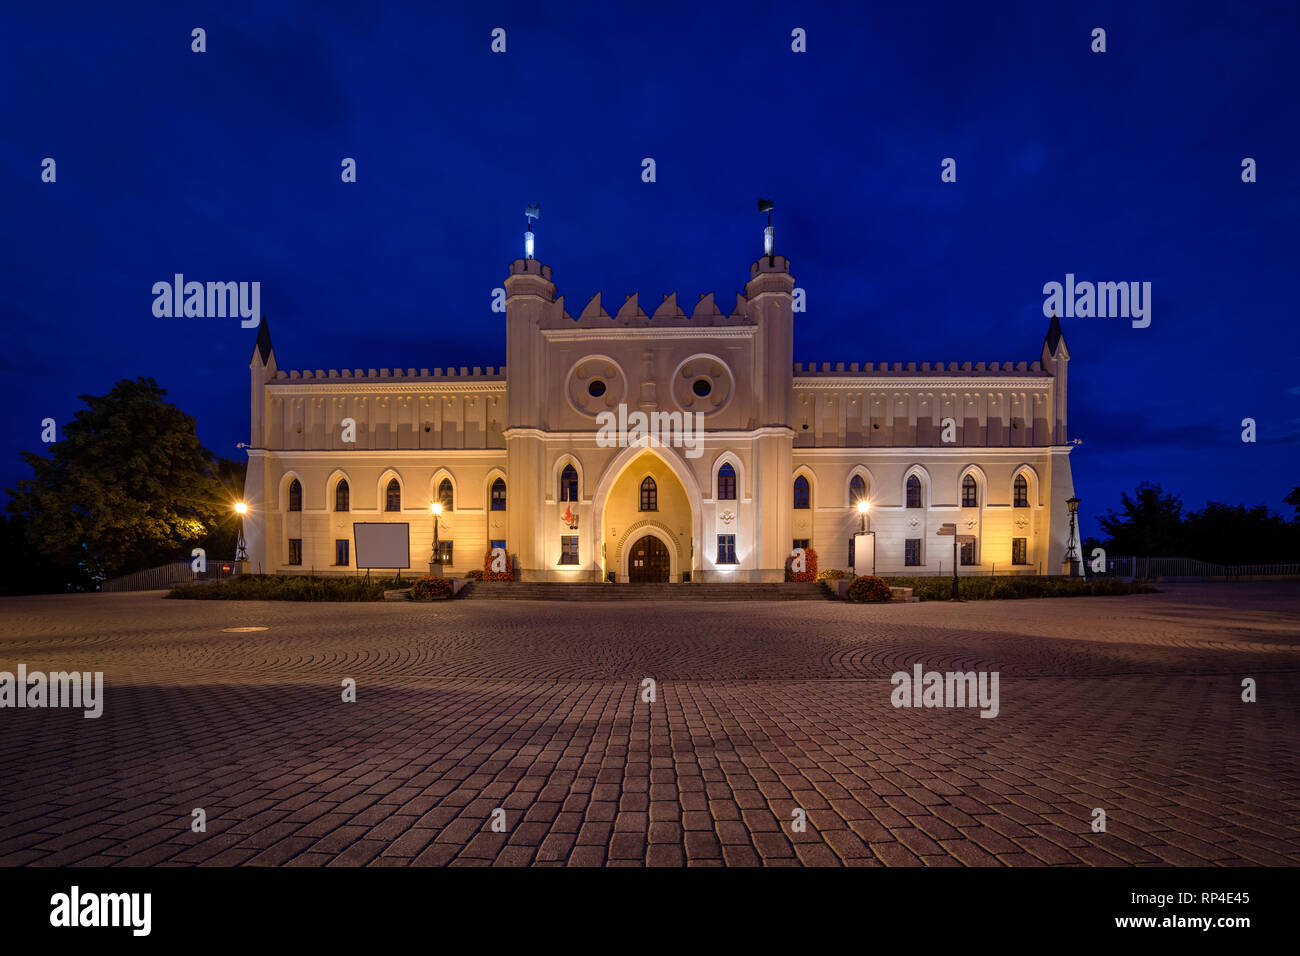 Main facade of Lublin Castle at dusk, Lublin, Poland Stock Photo